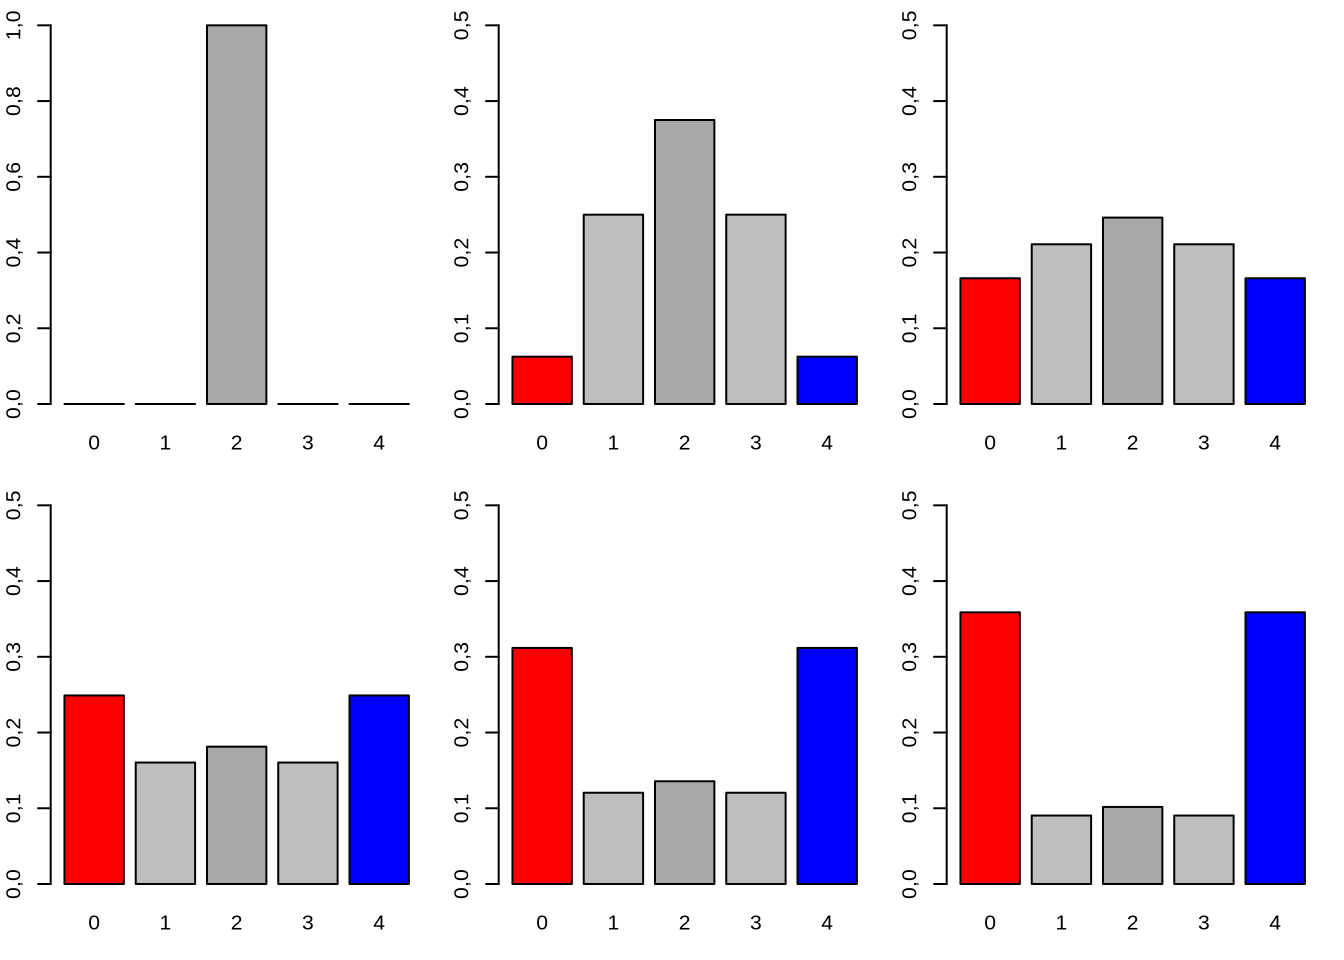 Evolución de la probabilidad de encontrar a las poblaciones en un estado alélico determinado desde la generación $t=0$ a $t=5$ (desde el costado superior izquierdo al inferior derecho). En rojo el estado de 0 alelos A (pérdida del mismo), en azul 4 alelos A (fijación del mismo) y en gris oscuro 2 alelos (nuestro punto de partida en todas las poblaciones). Notar la diferente escala de la generación $t=0$ al resto.